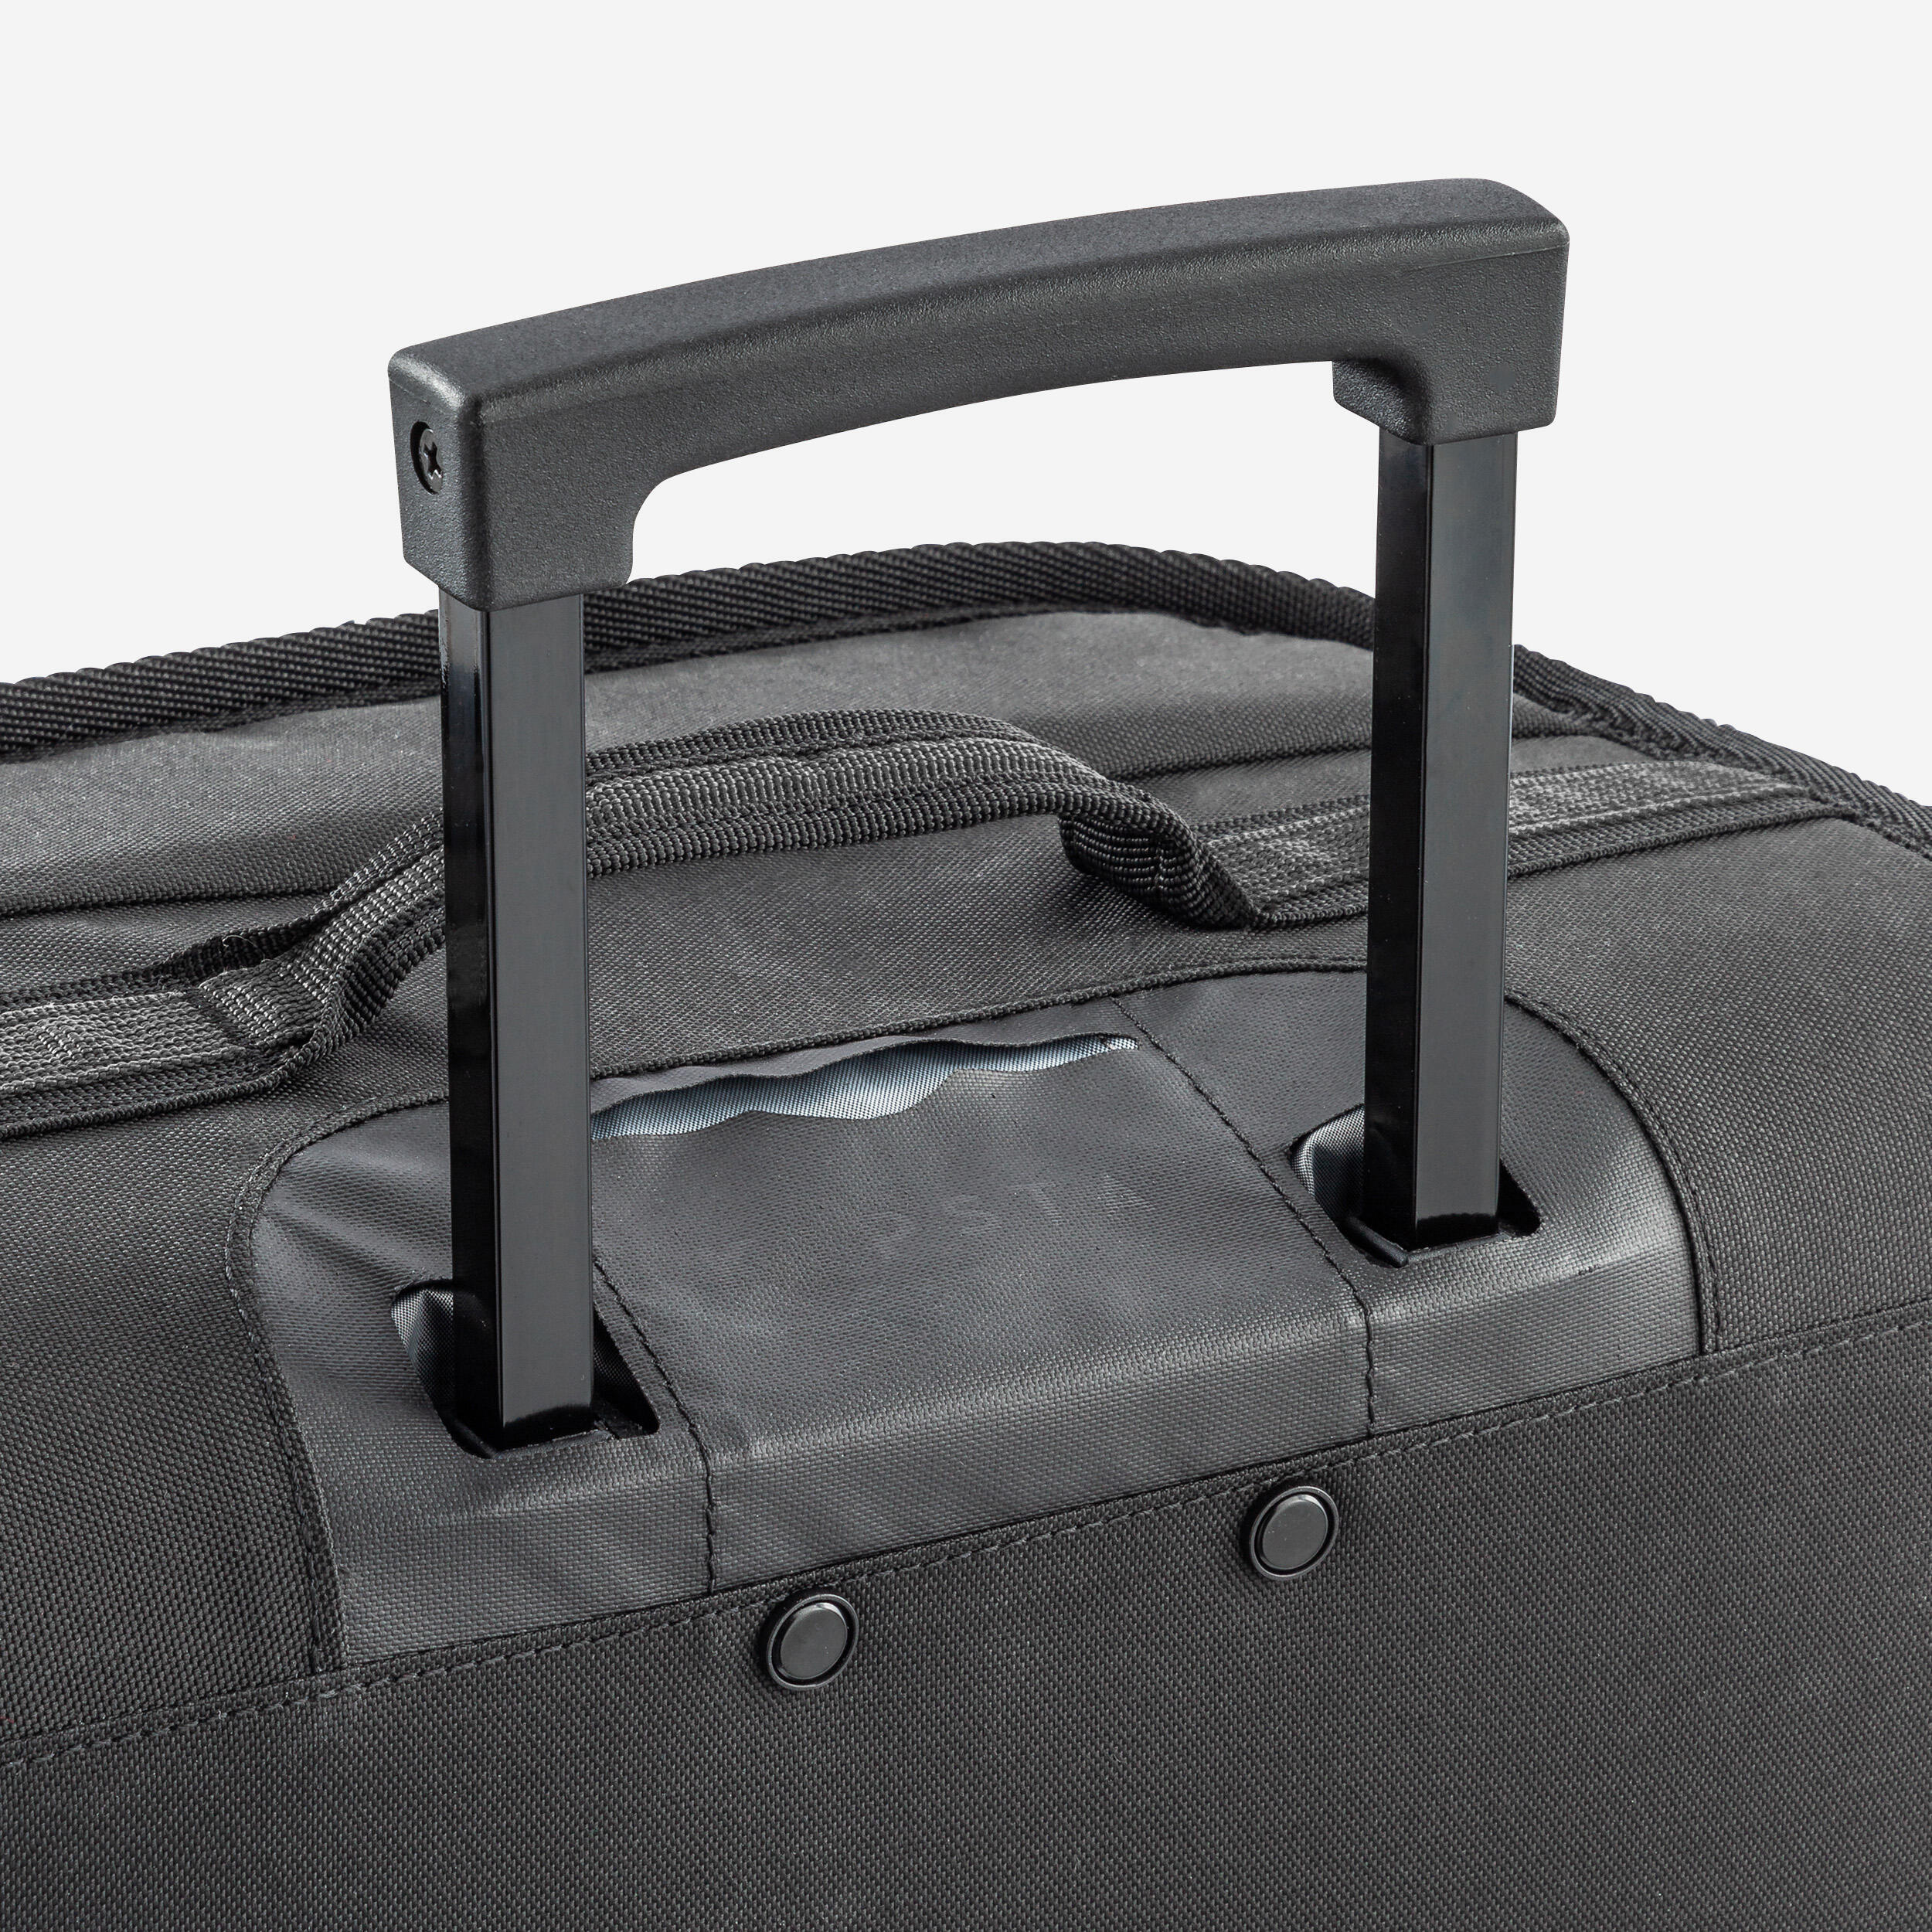 30L Suitcase Essential - Black/Grey 6/11